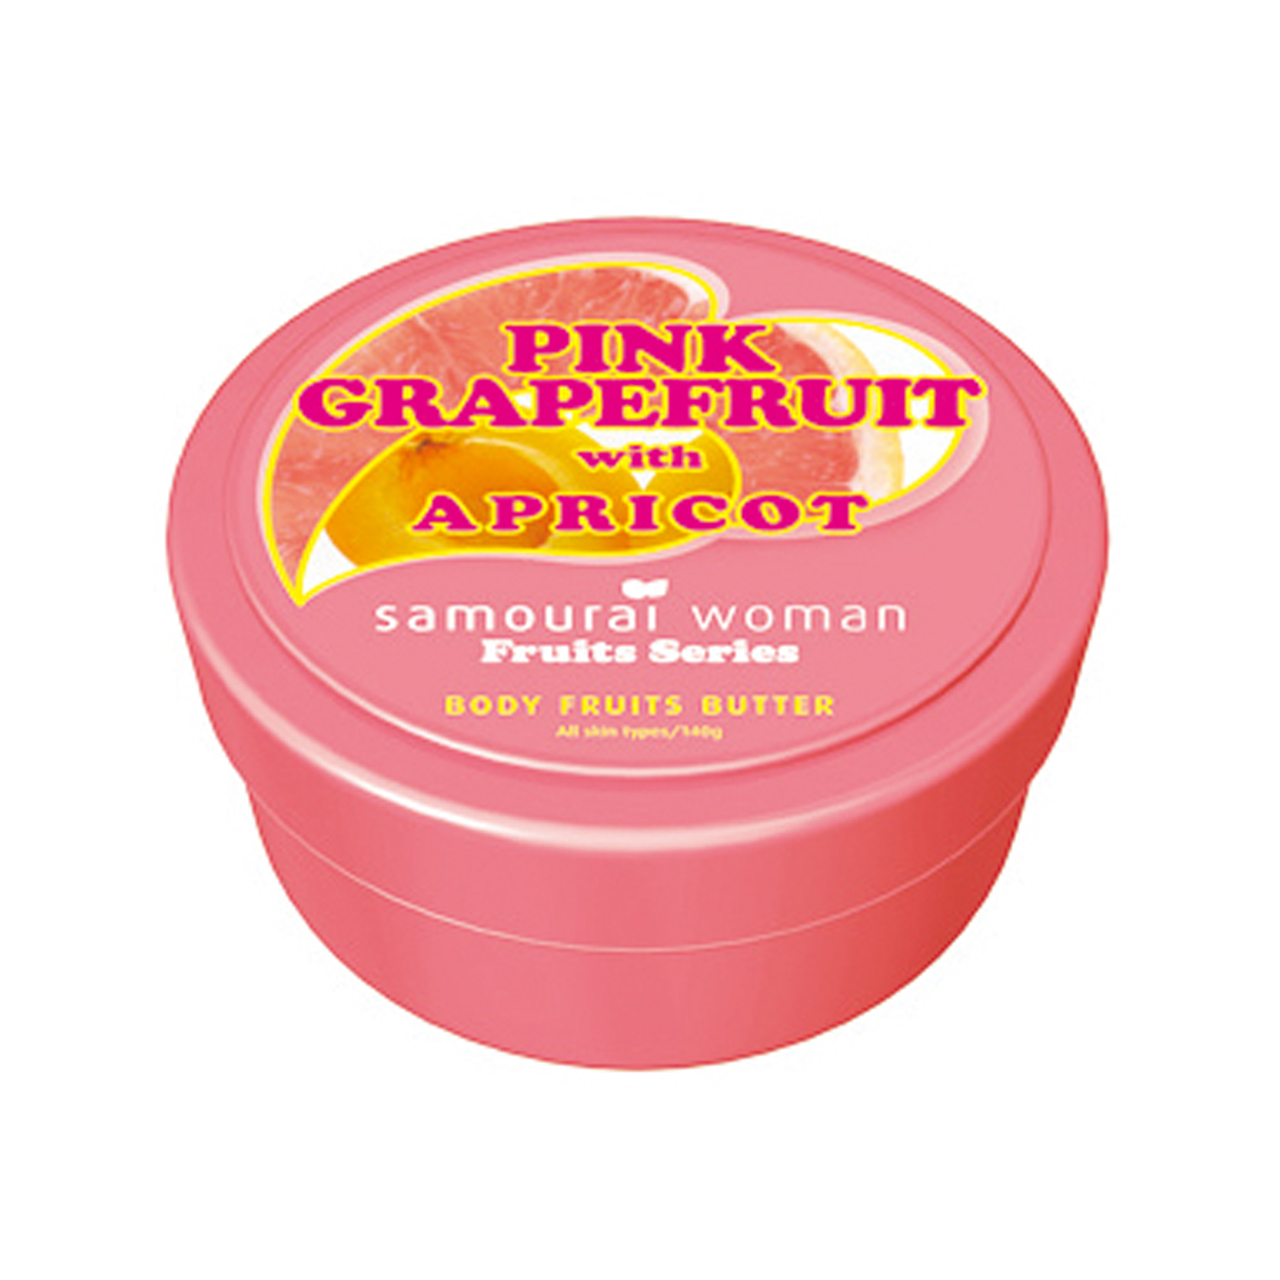 エスピーアール ジャパン サムライウーマン ボディフルーツバター ピンクグレープフルーツ・アプリコット 140g